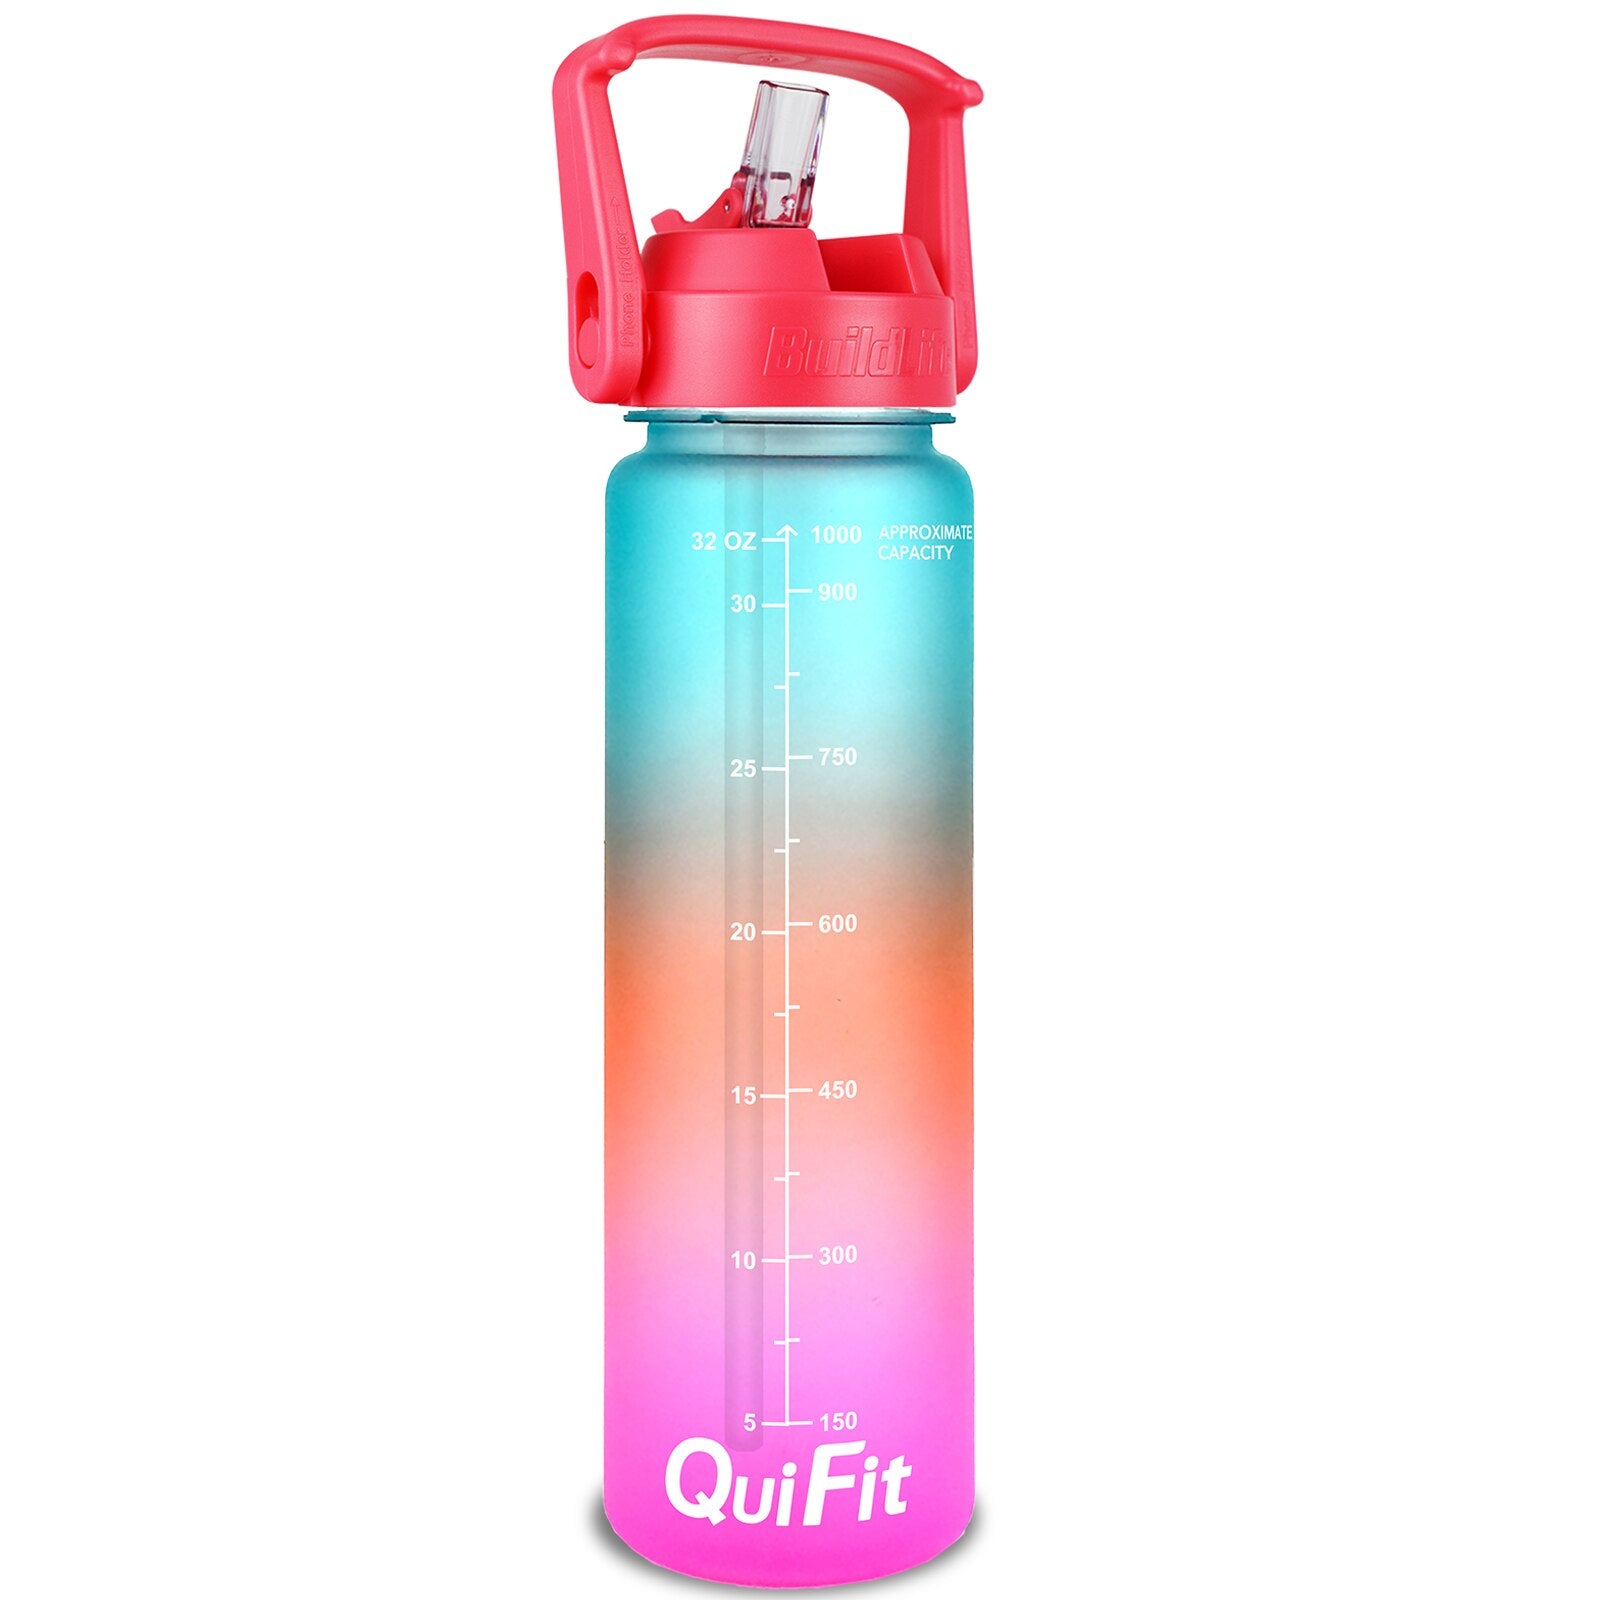 Eine Sporttrinkflasche mit einem Farbverlauf von Gruen ueber Orange zu Pink, ausgestattet mit einem grossen Henkel und mit Zeitmarkierungen zur Fluessigkeitsueberwachung. Unten ist das Markenlogo "QuiFit" zu sehen.